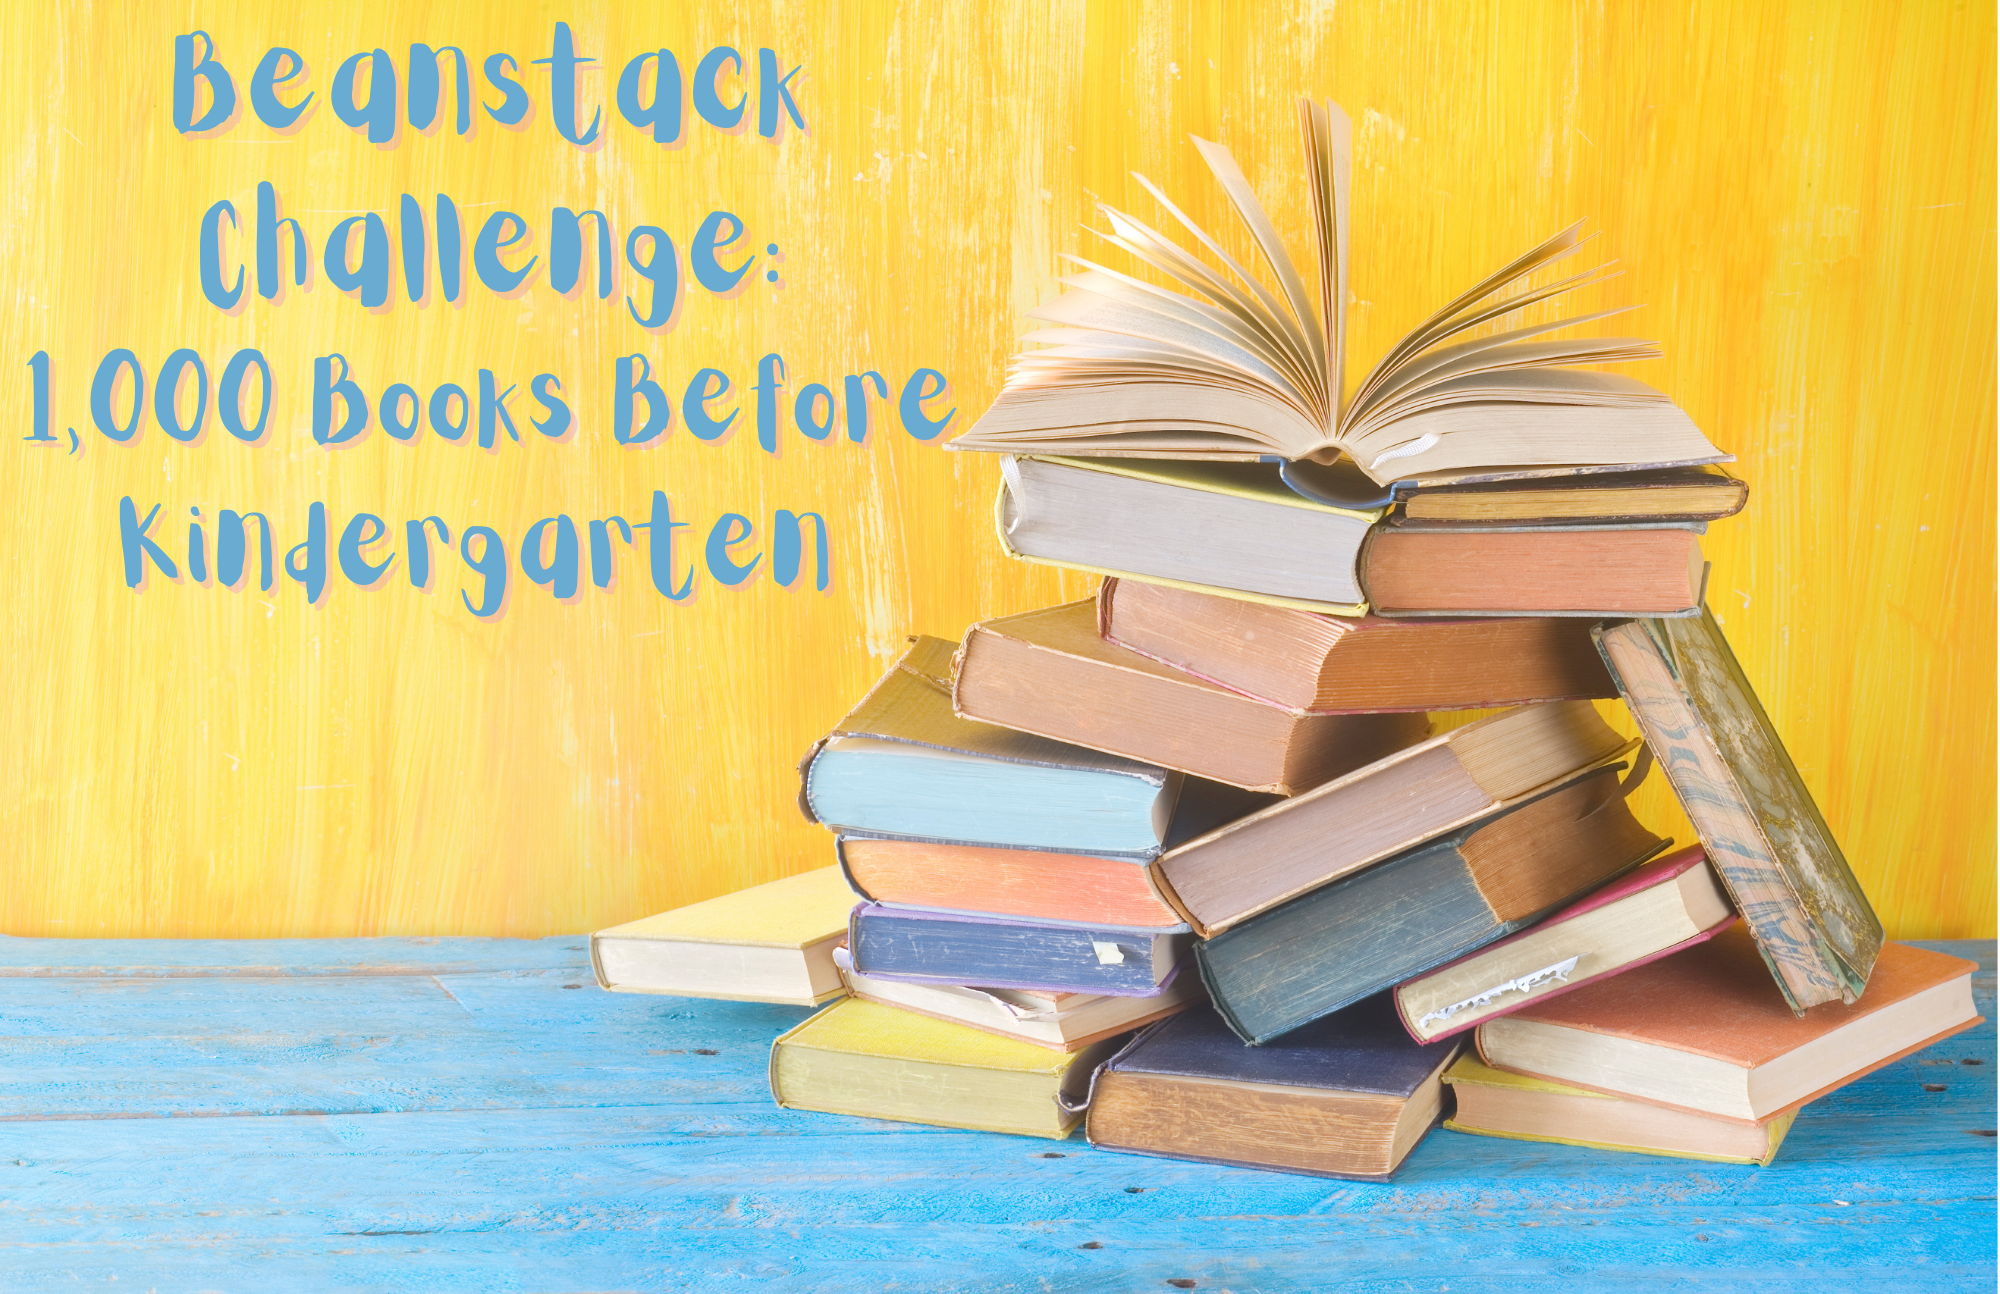 Beanstack Challenge: 1,000 Books Before Kindergarten